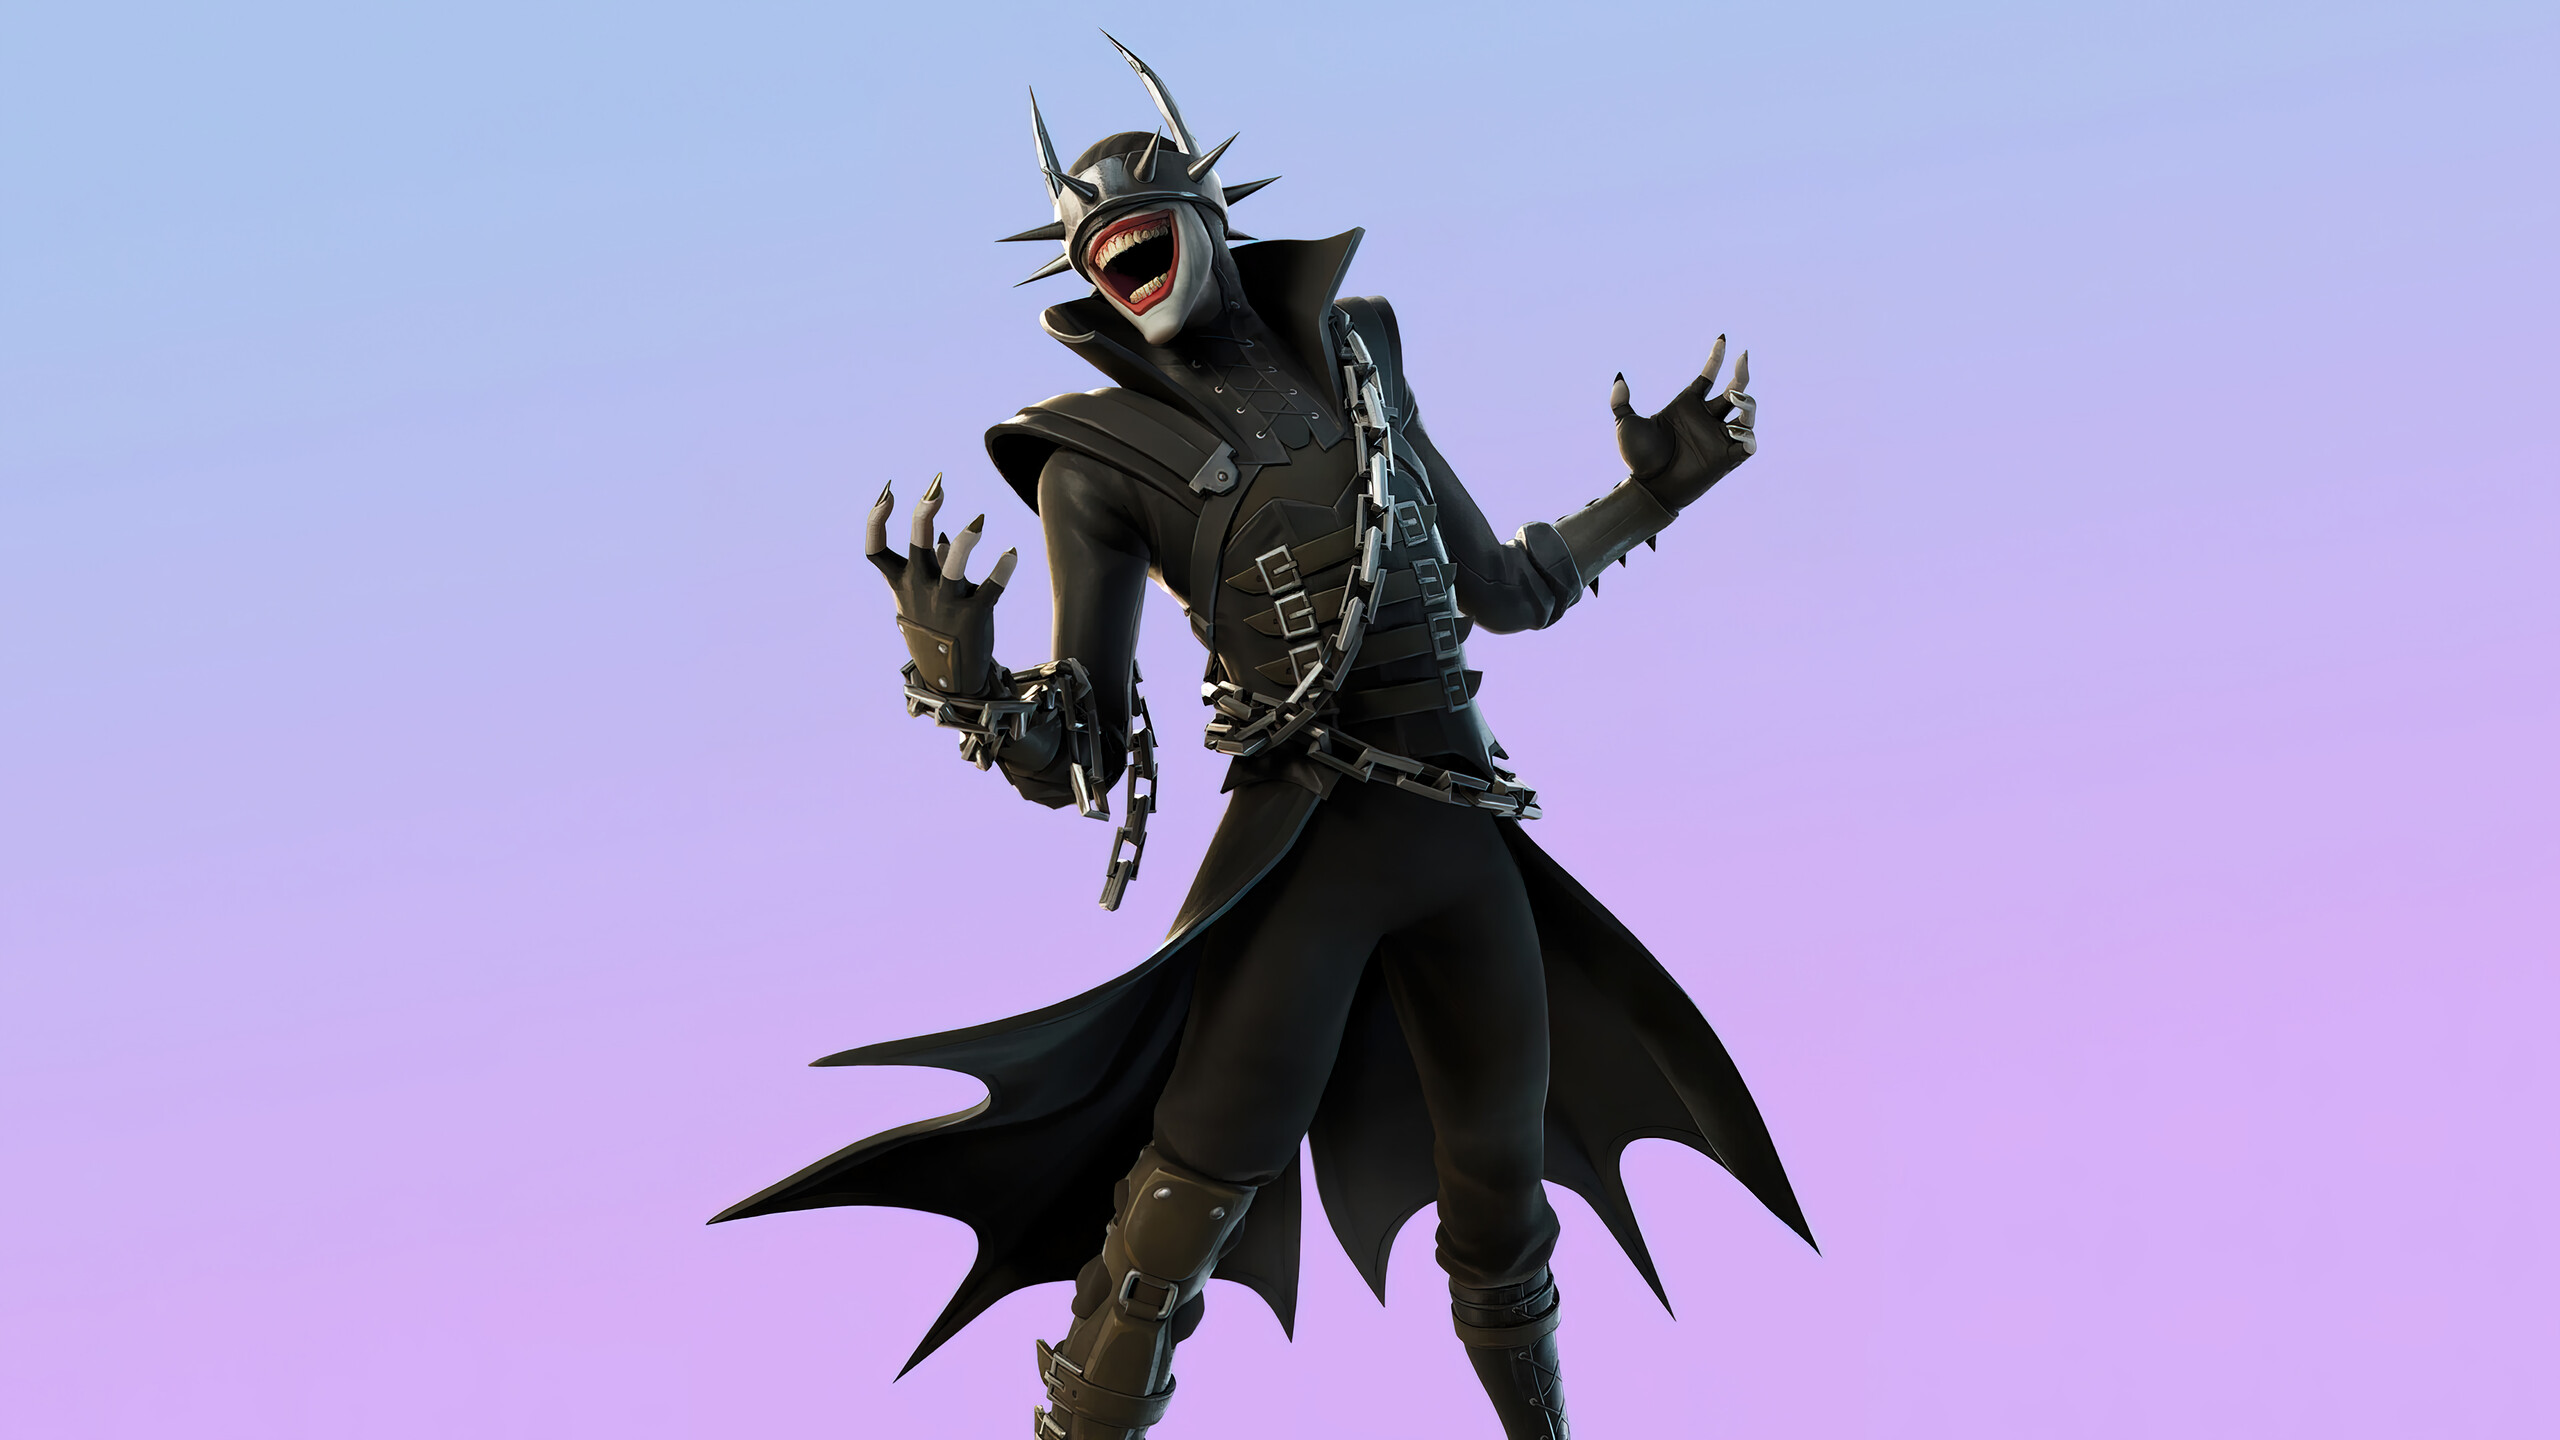 Fondos de pantalla de El Batman Que Ríe para escritorio, descarga gratis  imágenes y fondos de El Batman Que Ríe para PC 